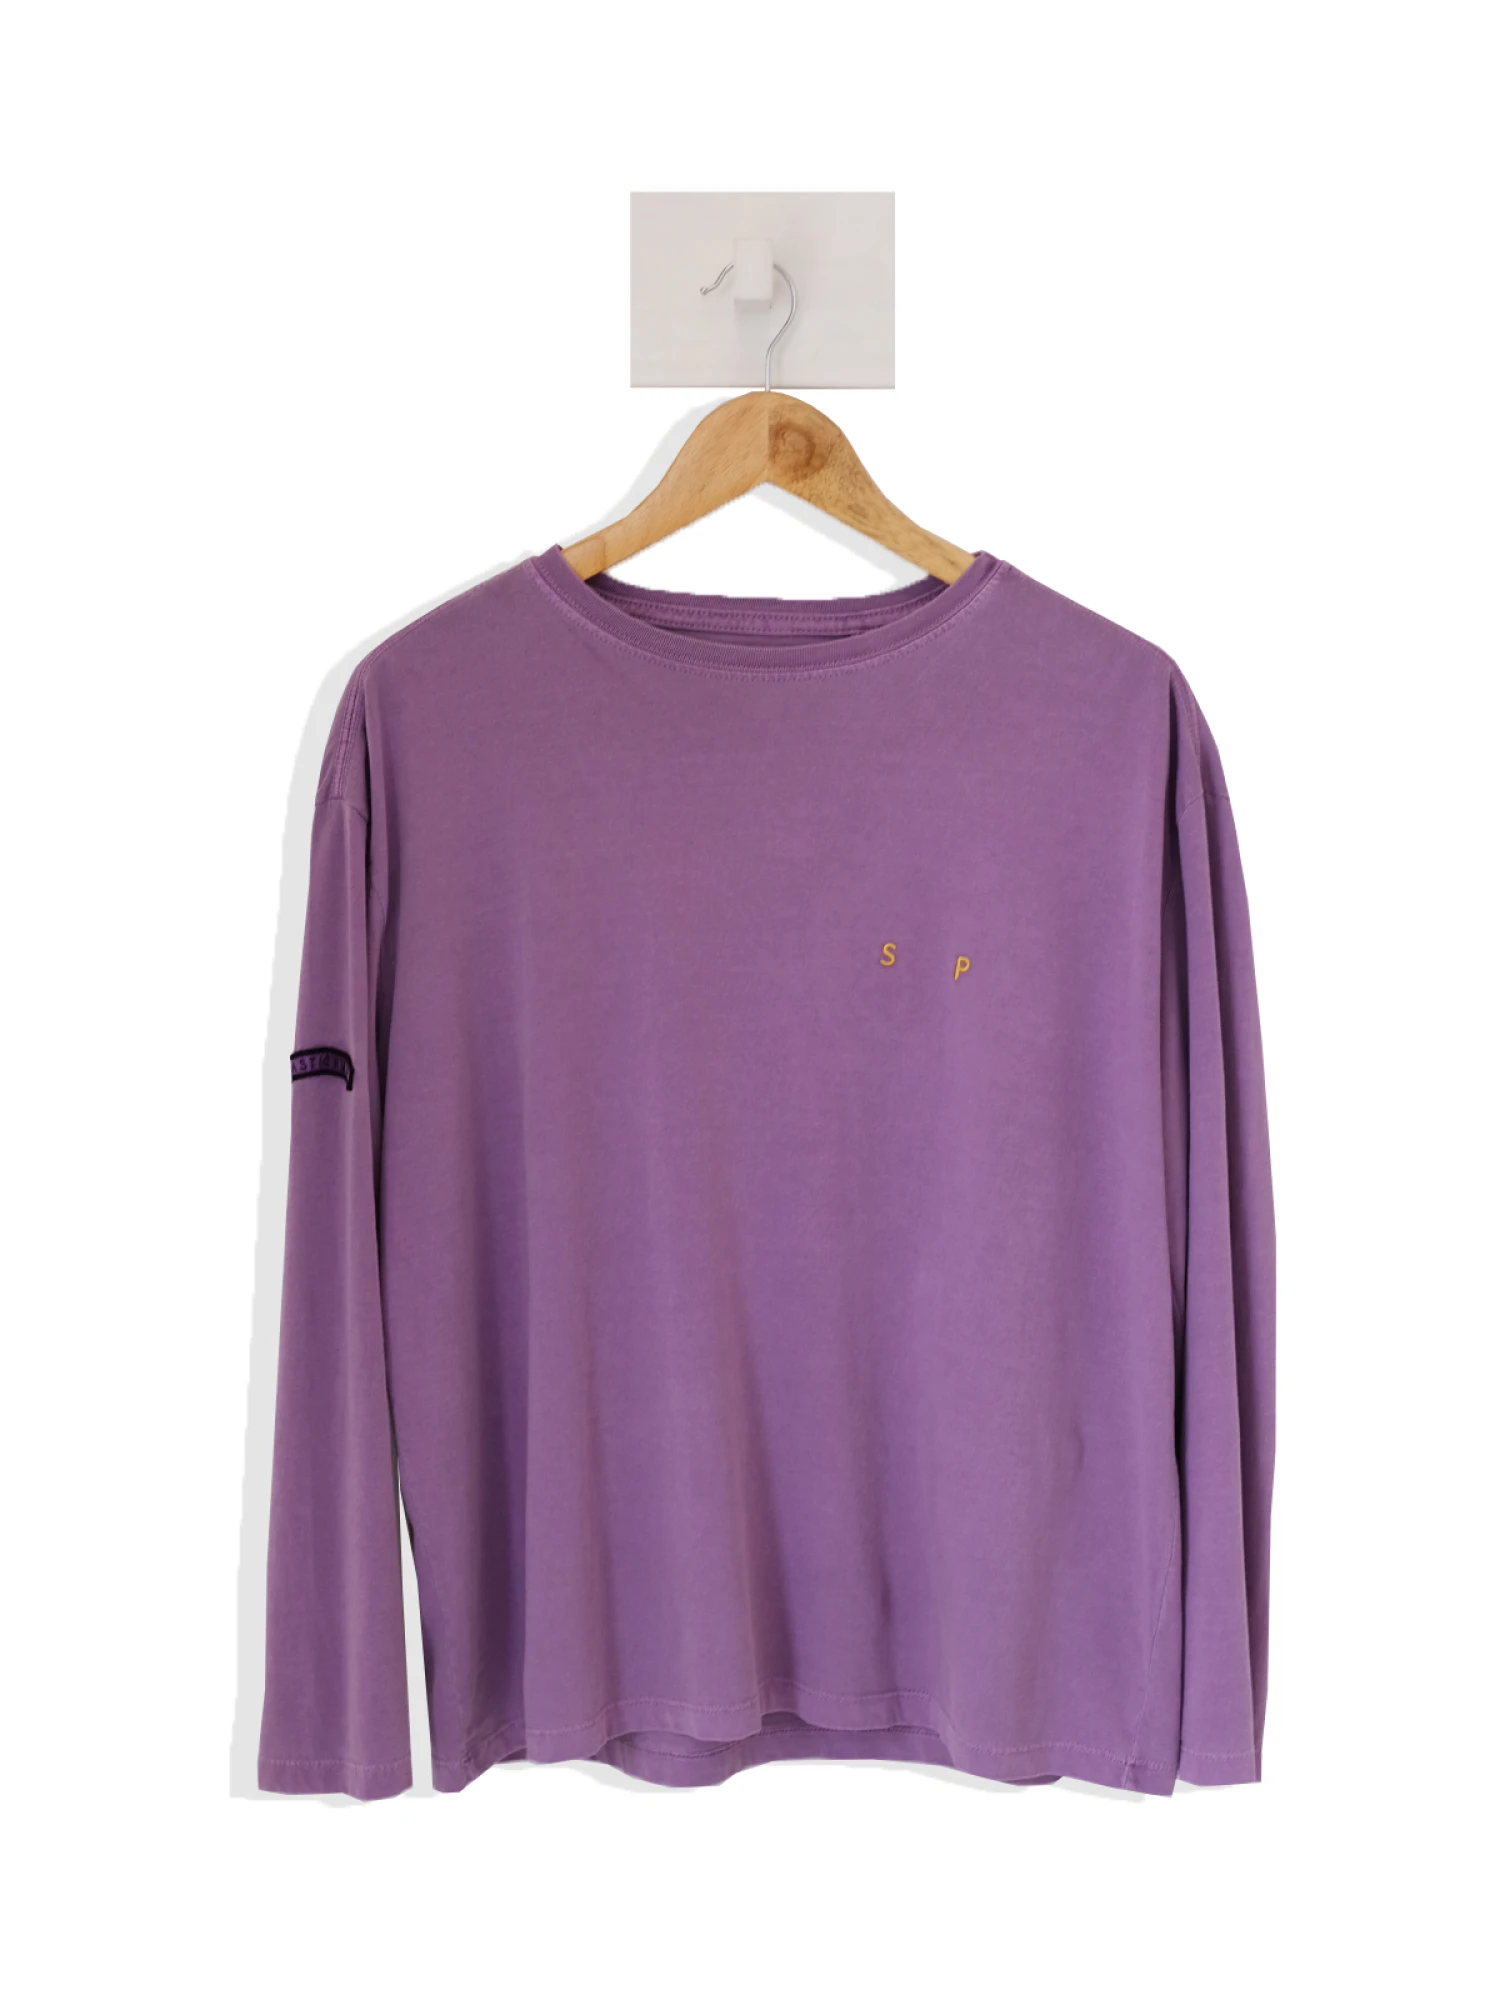 T-shirt Prince violeta m